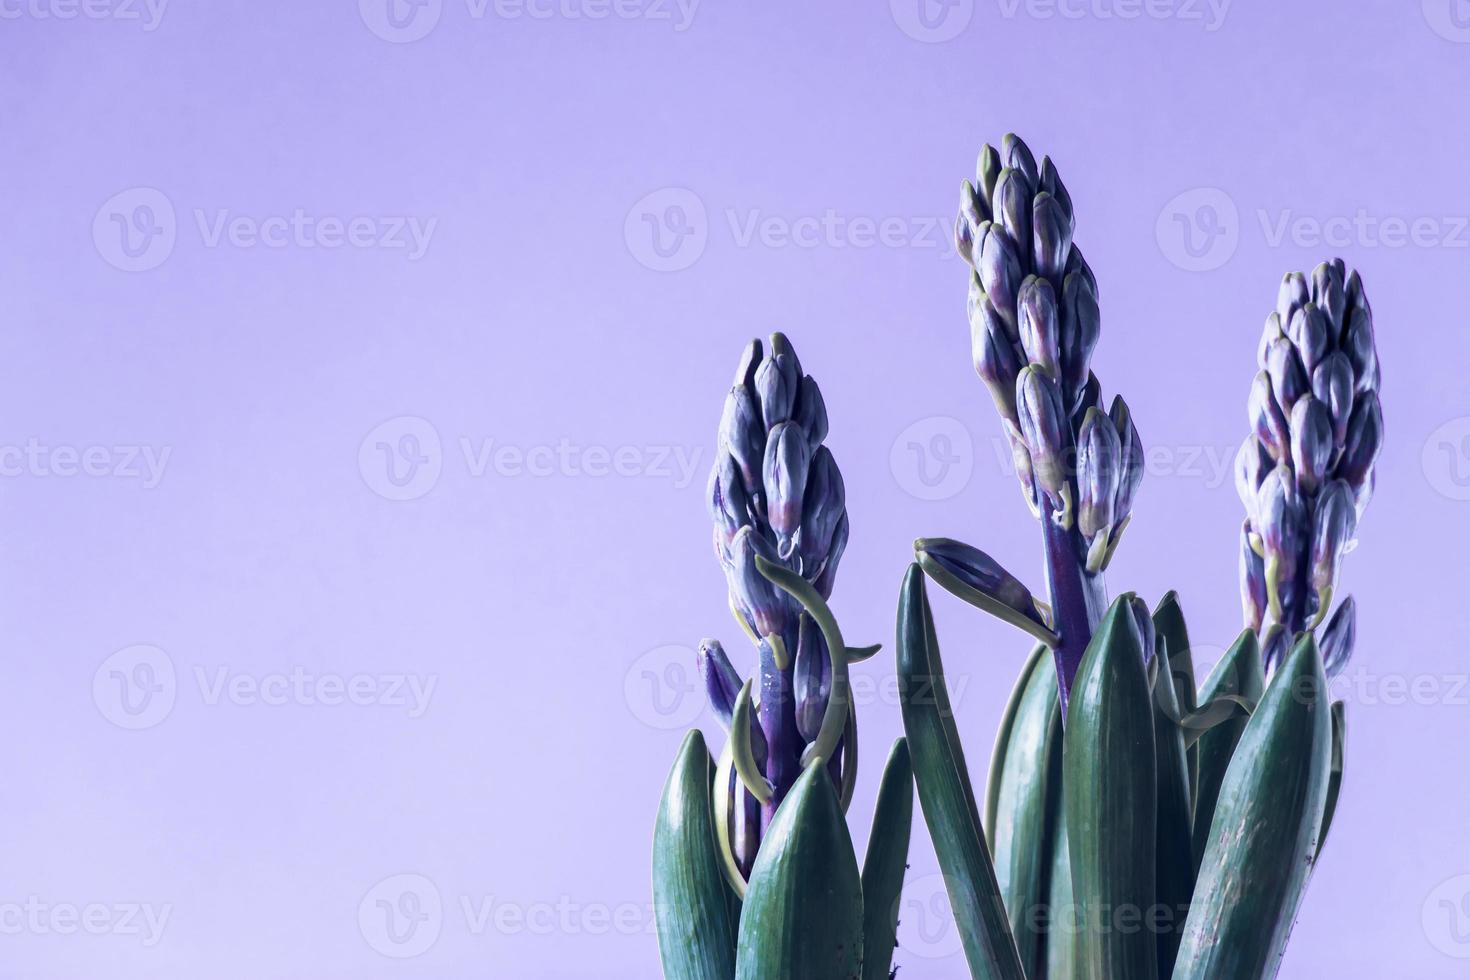 boccioli di giacinto su sfondo viola. colore alla moda dell'anno 2022 foto